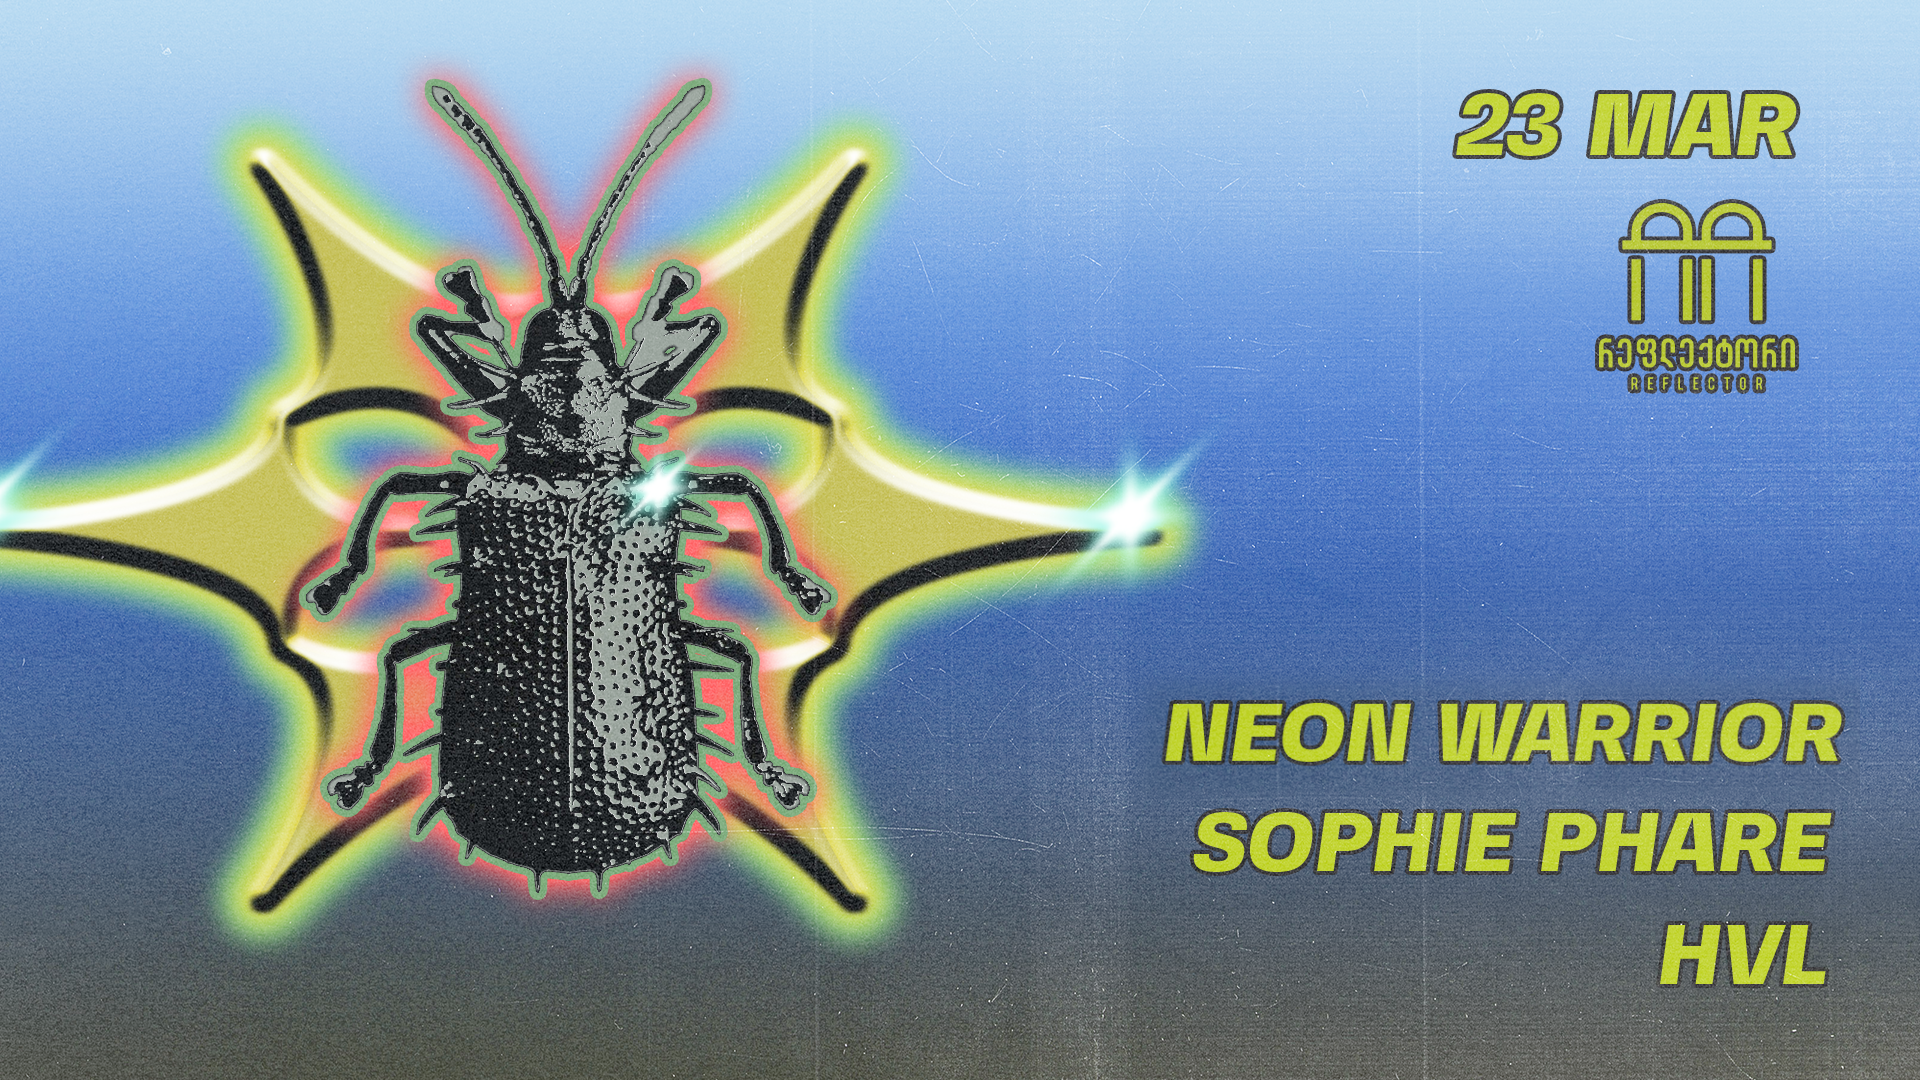 HVL // Sophie Phare // Neon Warrior - フライヤー表